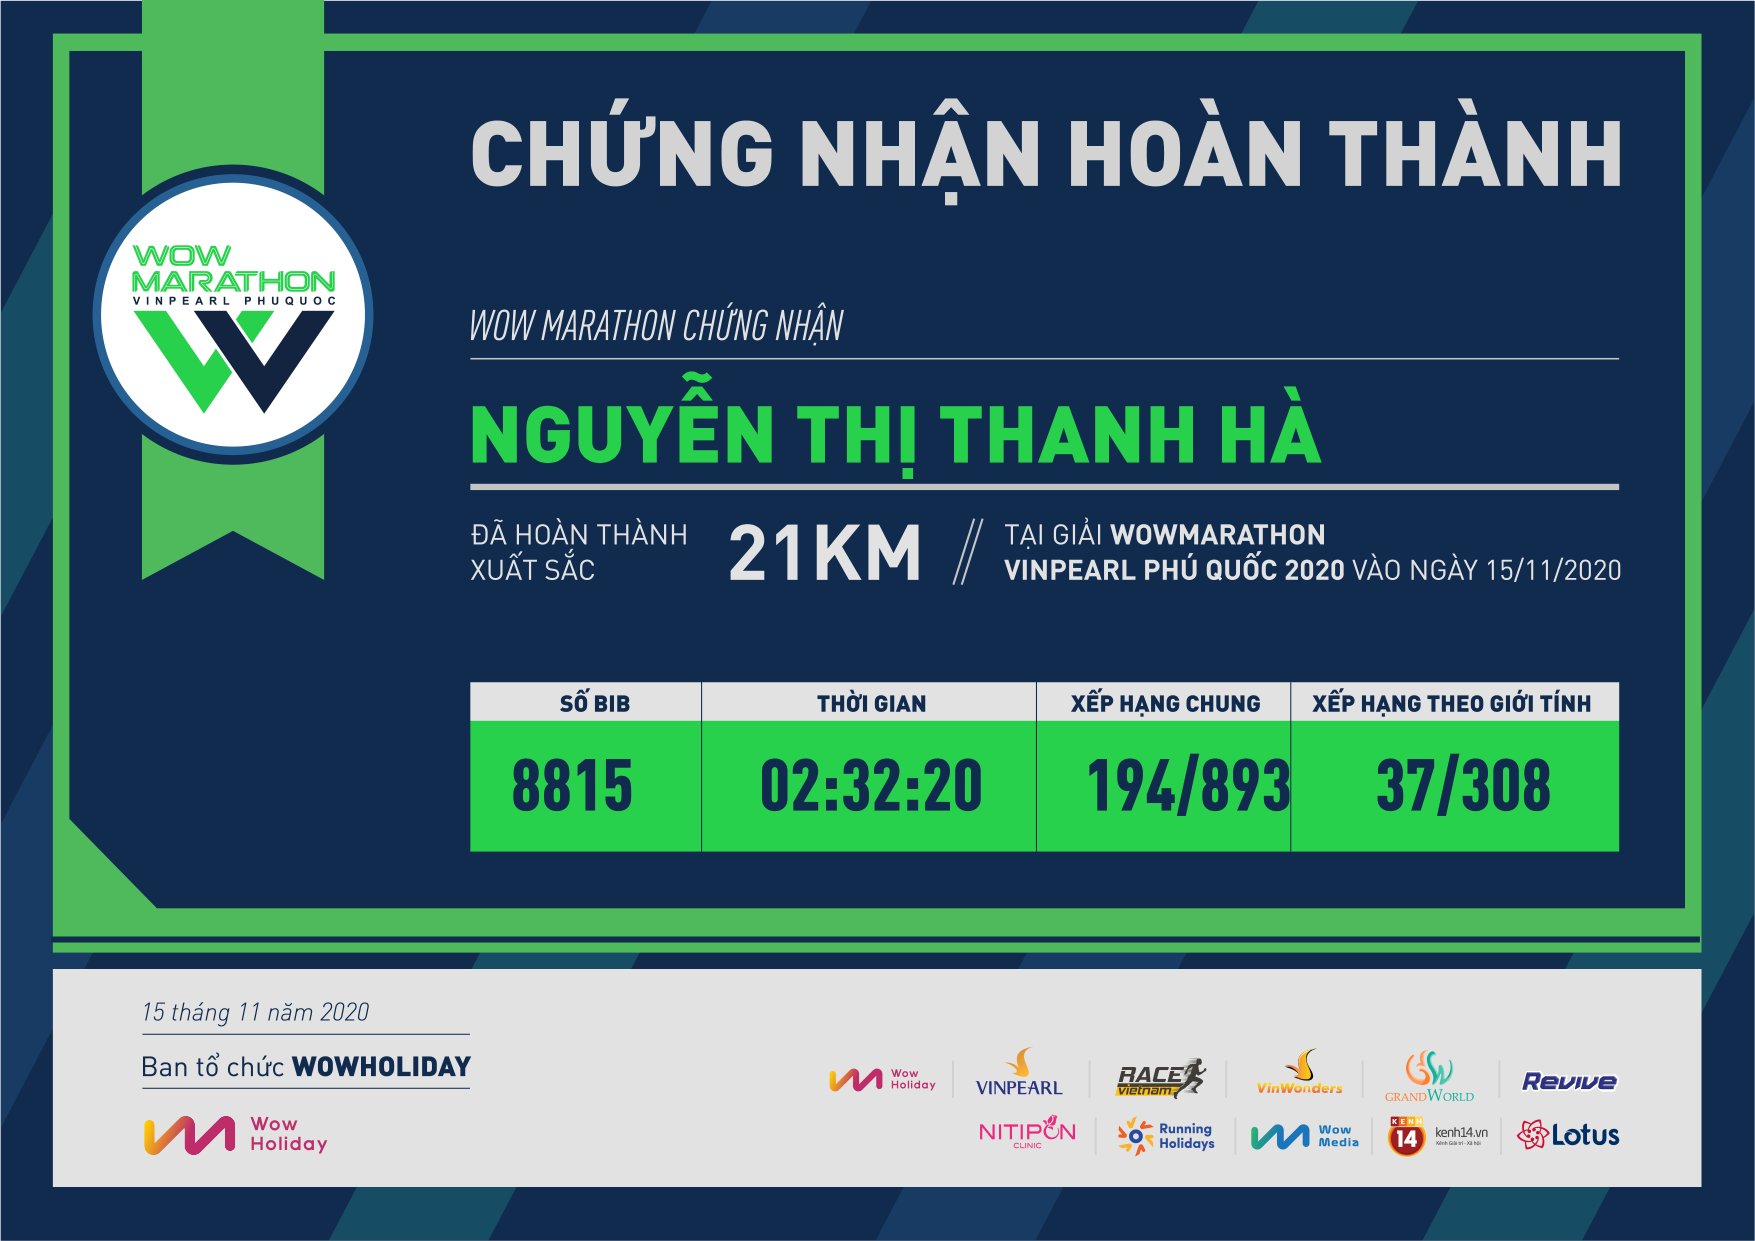 8815 - Nguyễn Thị Thanh Hà